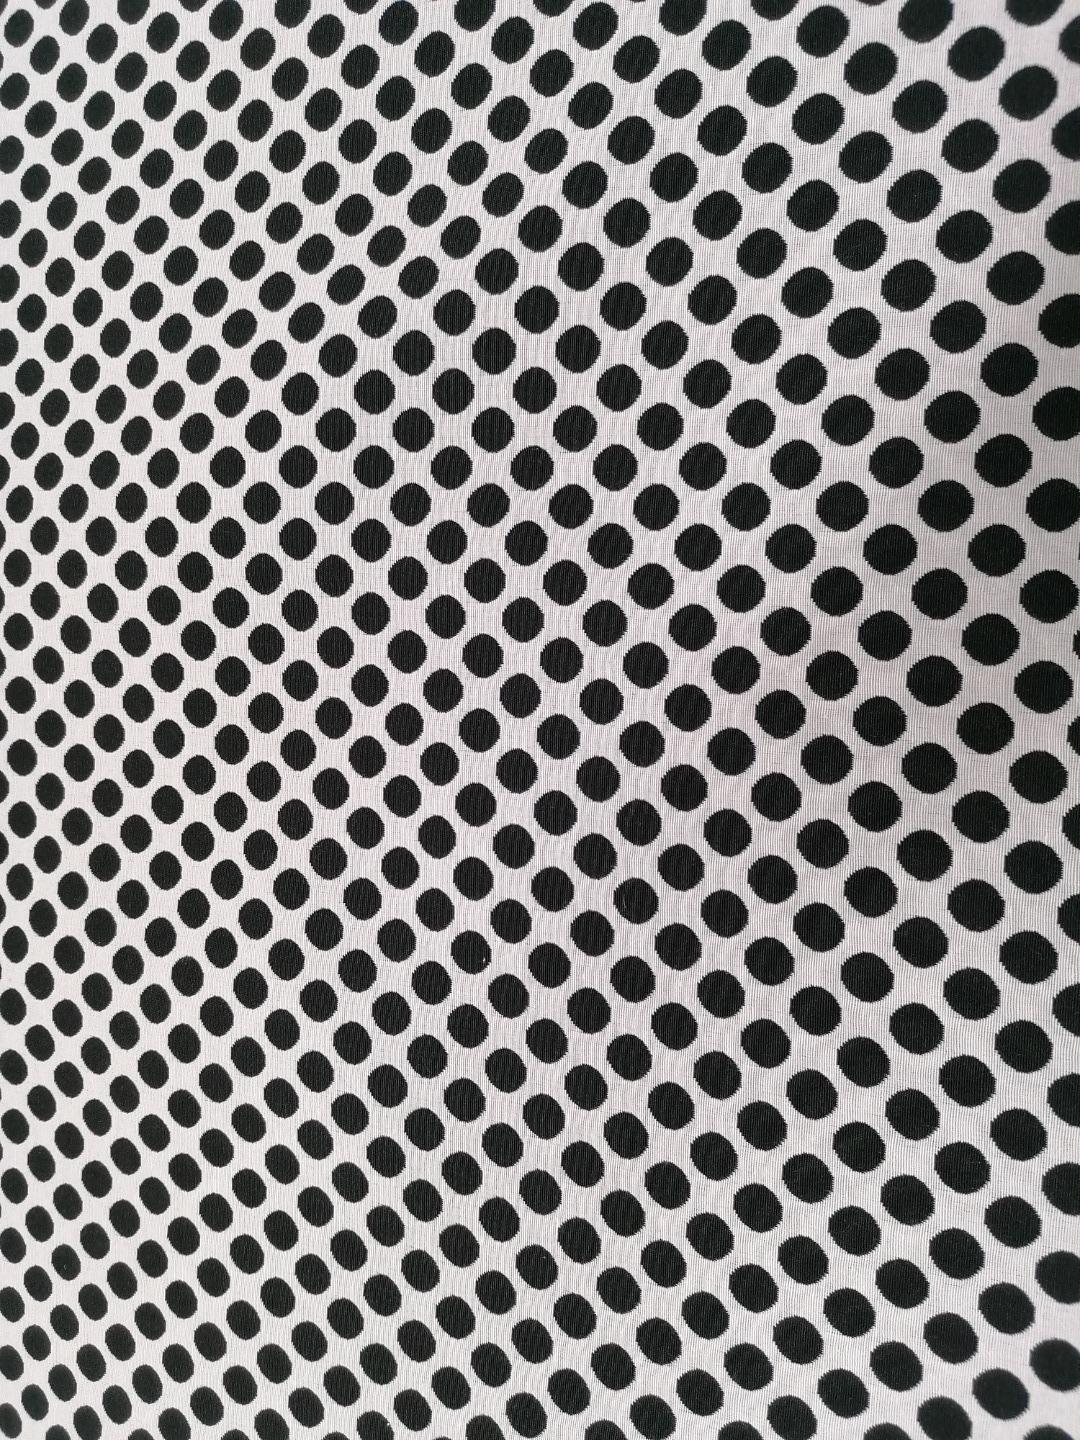 05m Dekostoff Jacquard Premium Doubleface Dots Punkte schwarz weiß 3